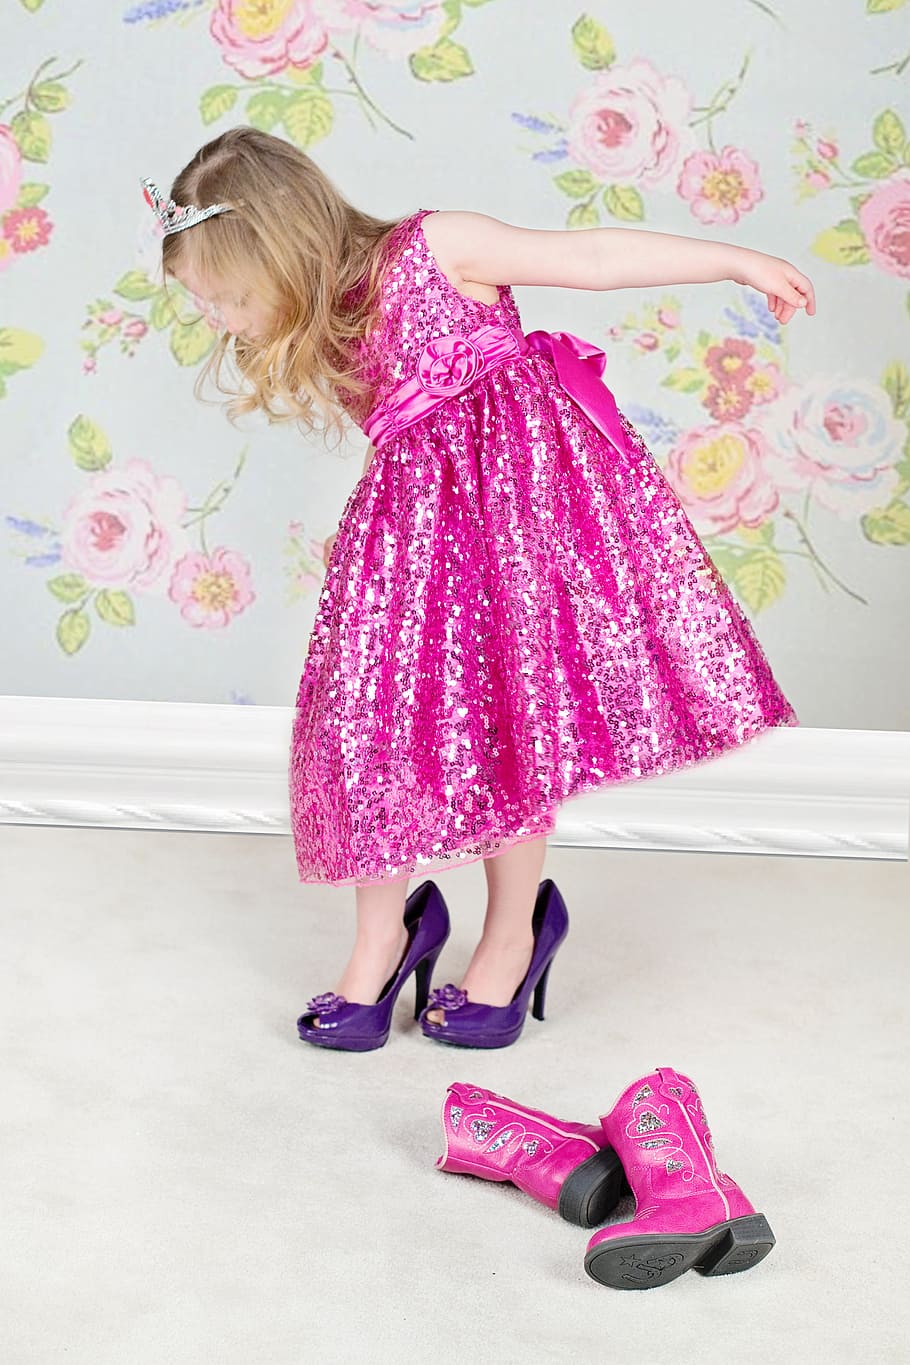 menina, montagem, par, calcanhares, sapatos de salto altos, rosa, vestido, glamour, infância, jogando